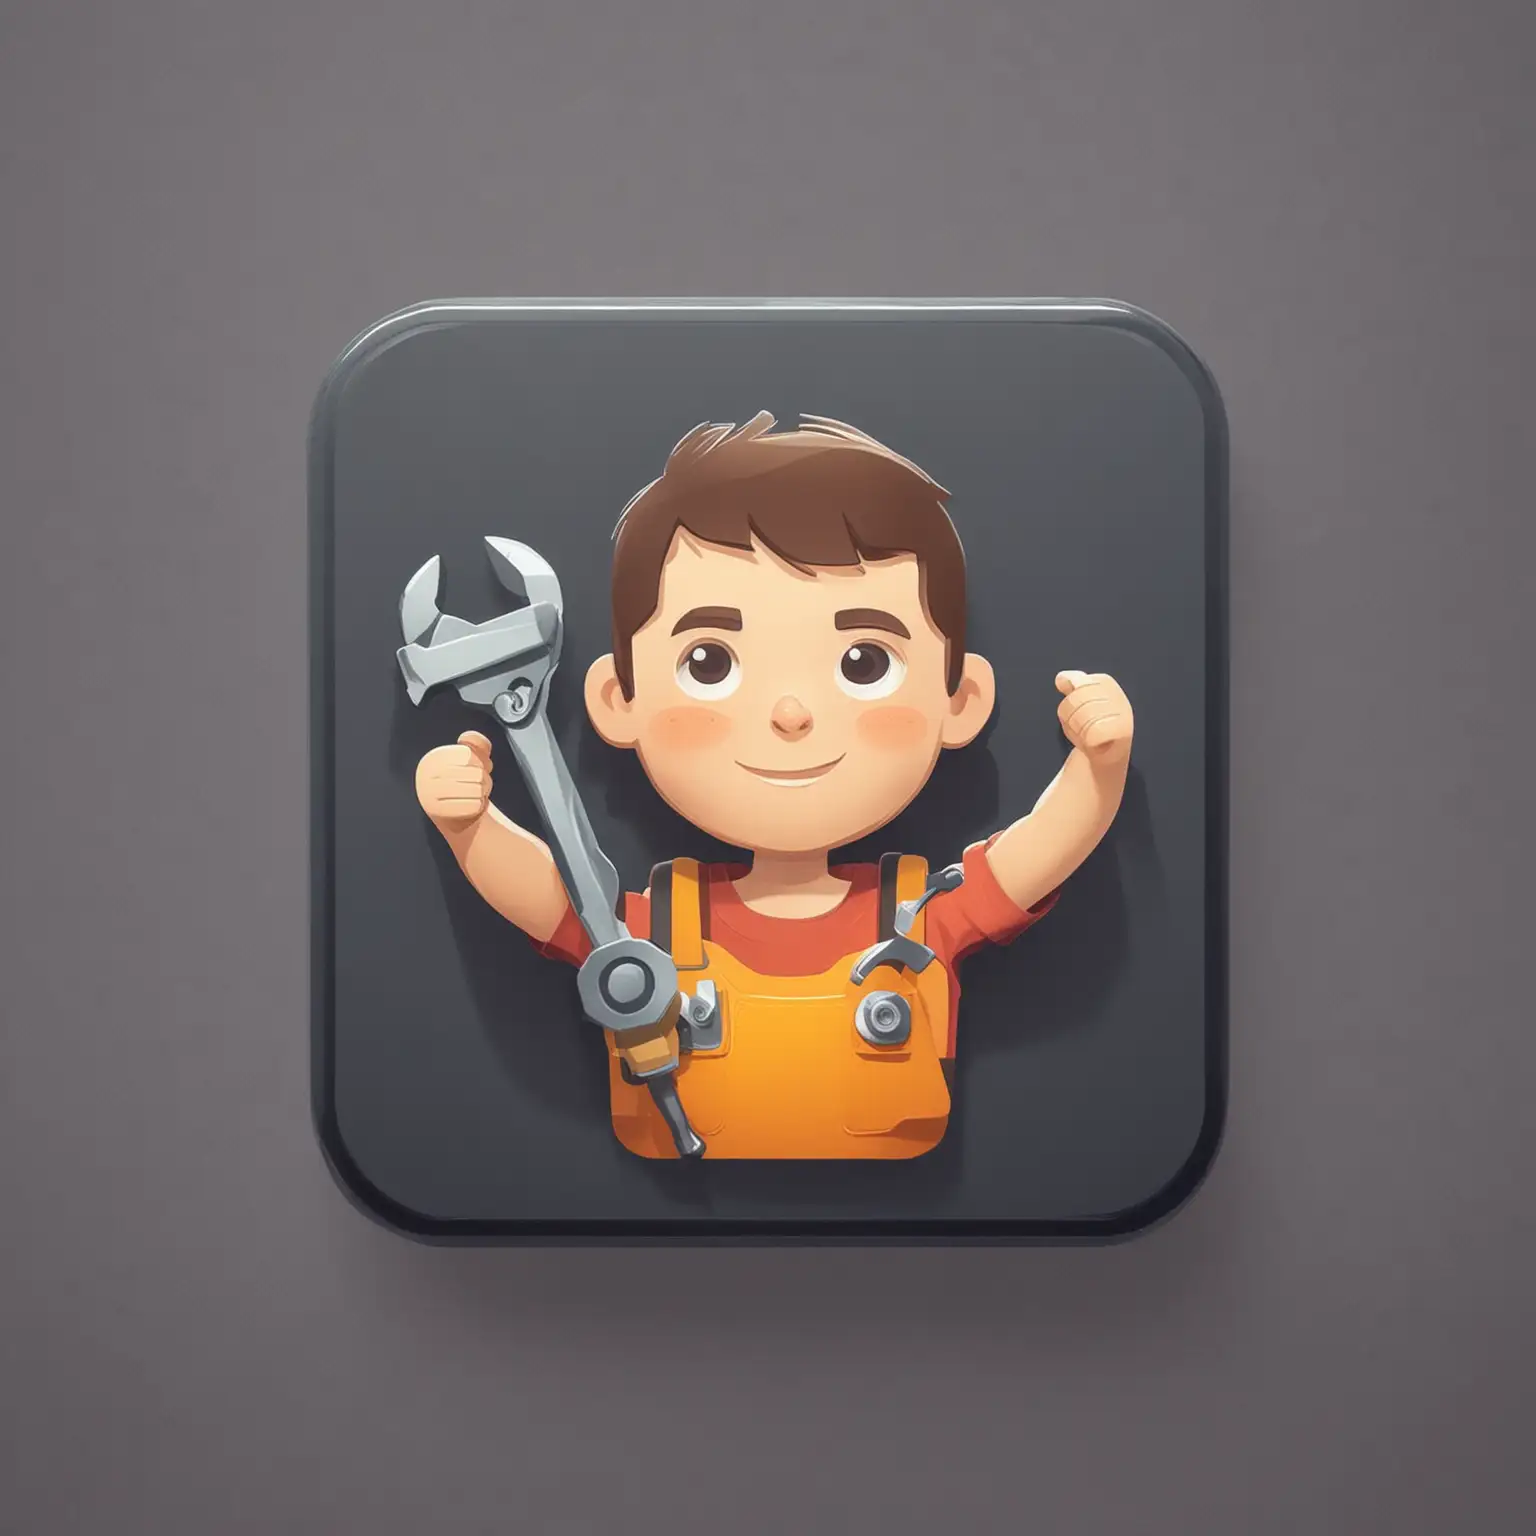 生成一个app的icon，正方形圆角，一个汽修男孩拿着扳手，扁平化风格，彩色